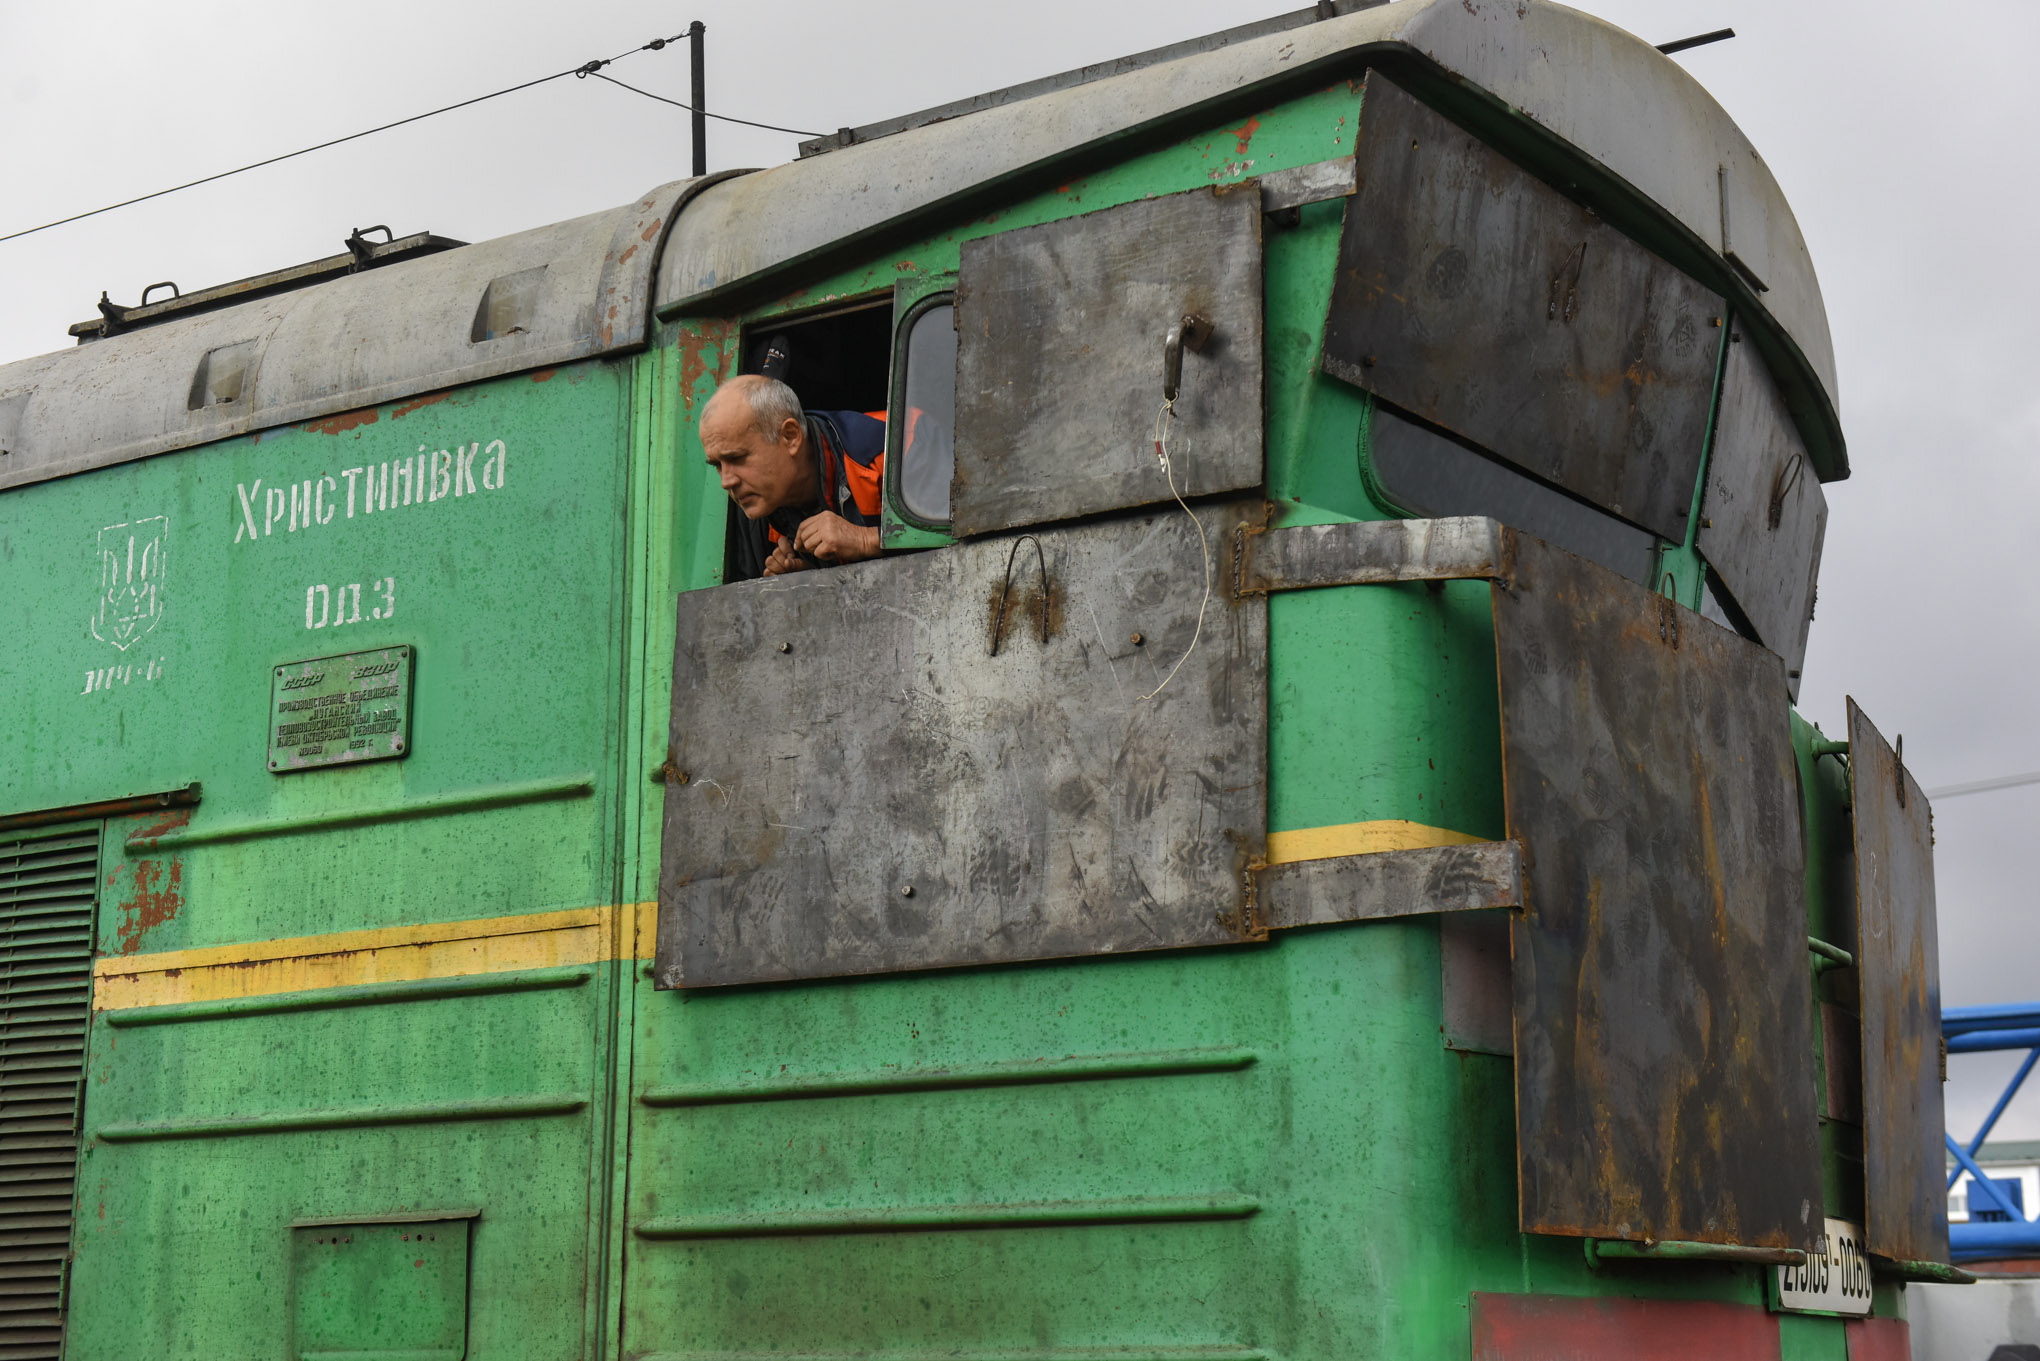 Бронированный вагон поезда, прибывшего в освобожденный Херсон из Киева. Фото EPA/OLEG PETRASYUK/Scanpiх/Leta.